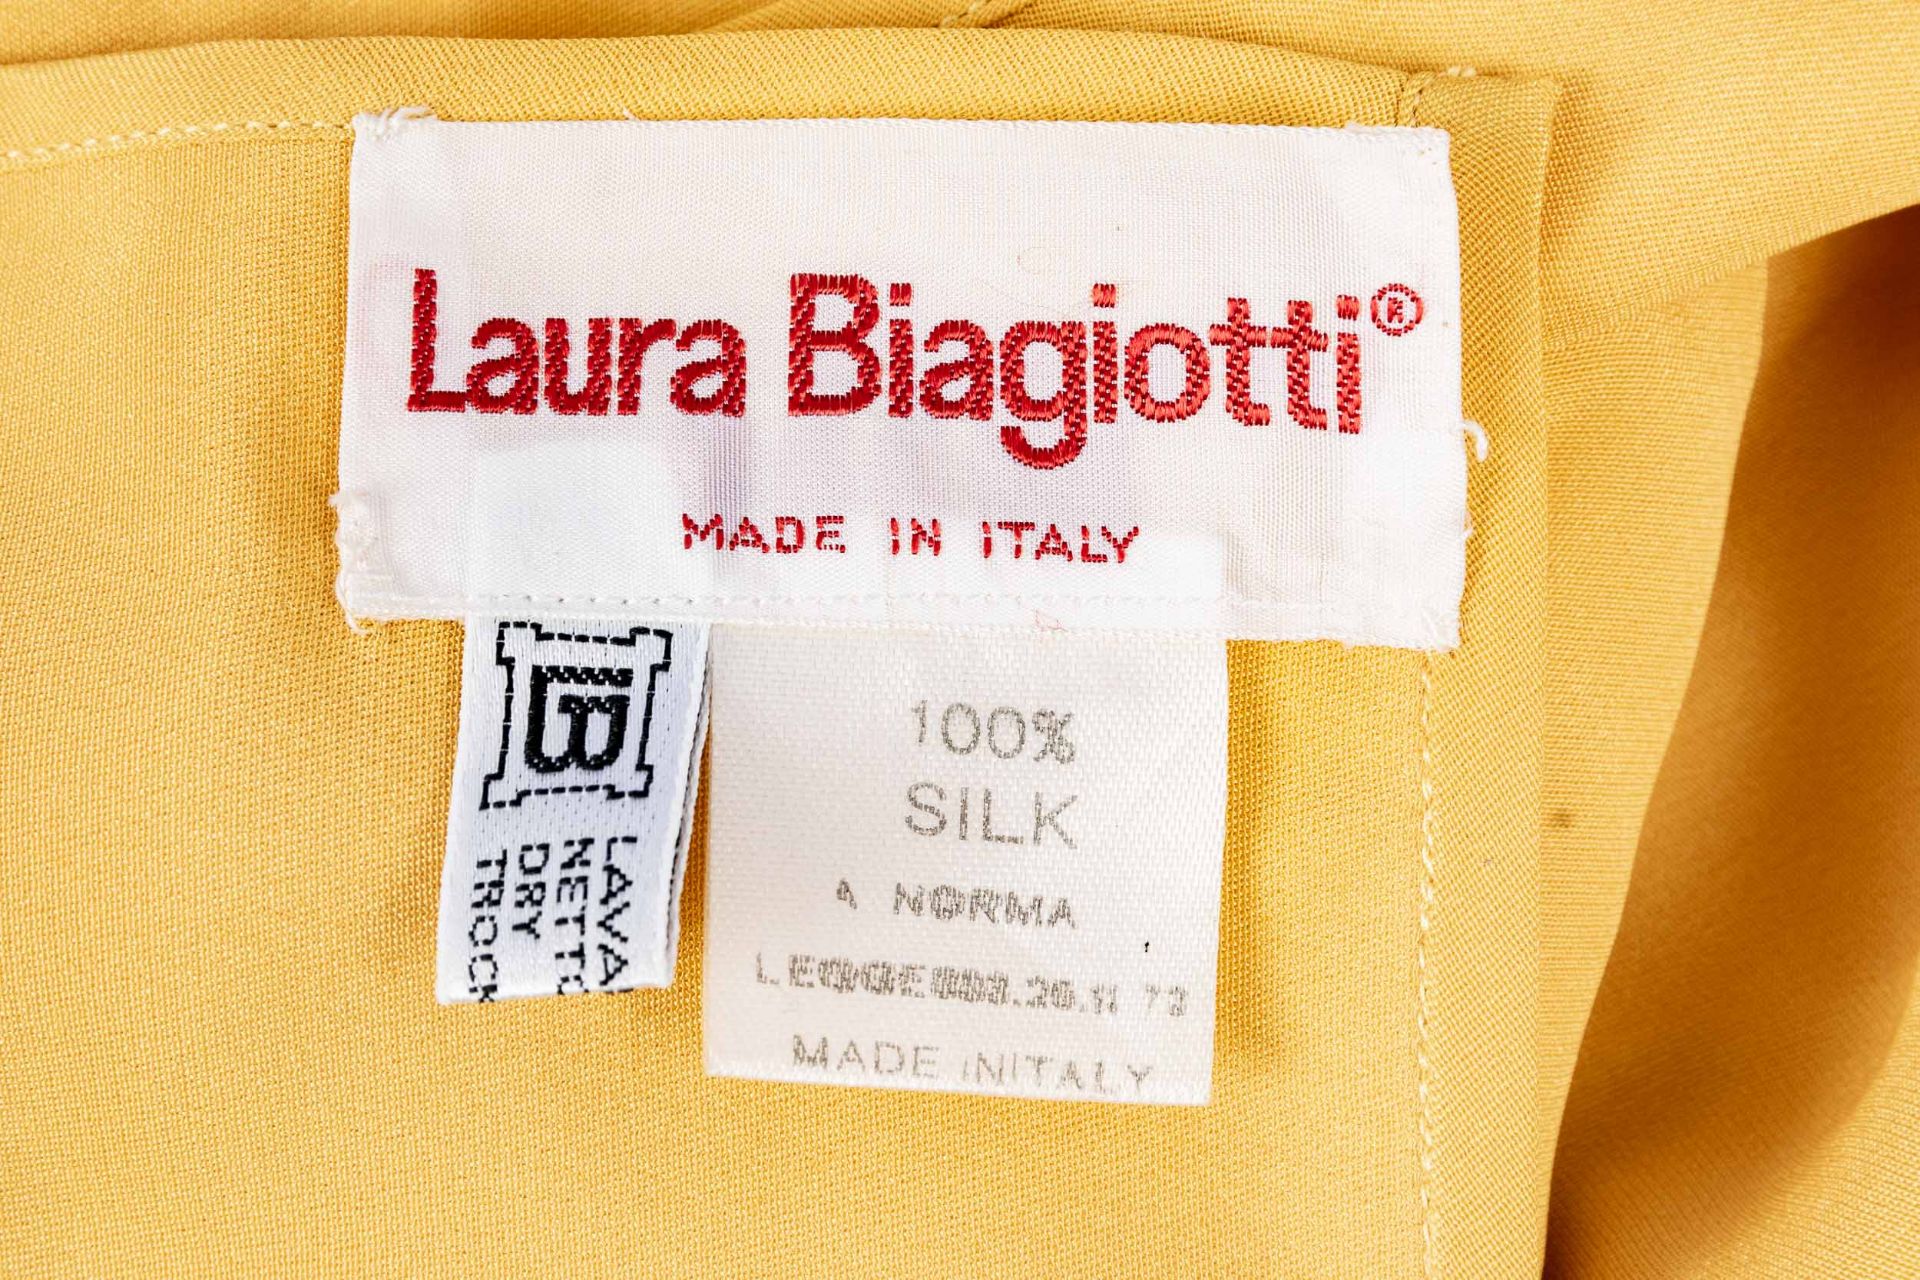 Sehr großes, gold-gelbes Tuch aus dem Hause Laura Biagotti, 100% Seide, ca. 140 x 140 cm; sehr schö - Bild 2 aus 3